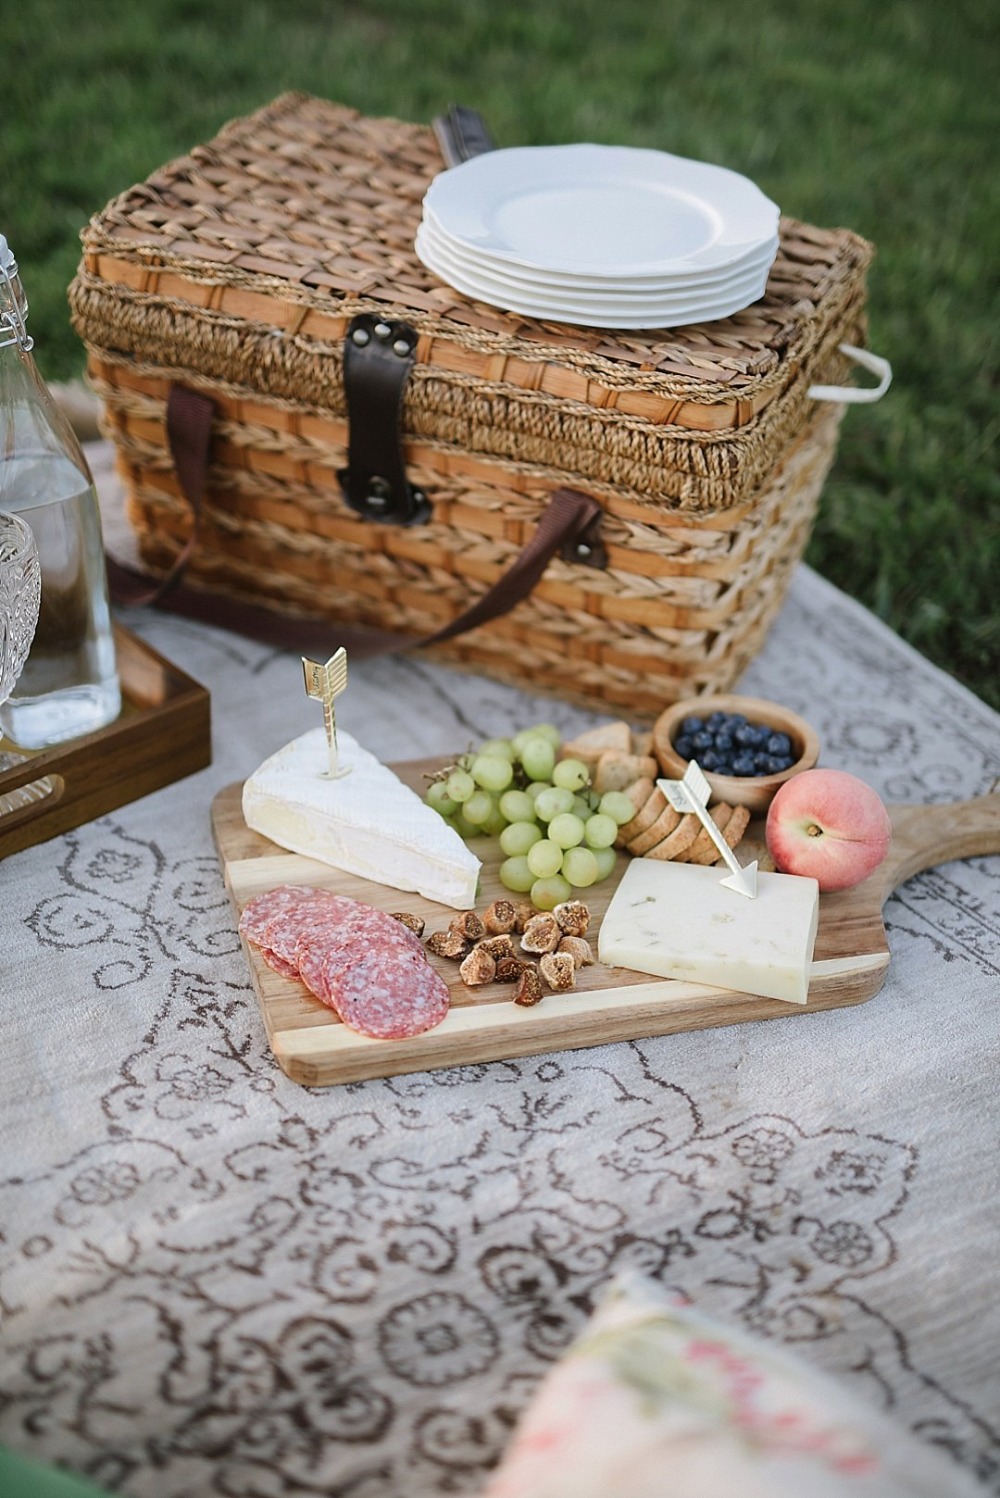 Cute picnic ceremony idea